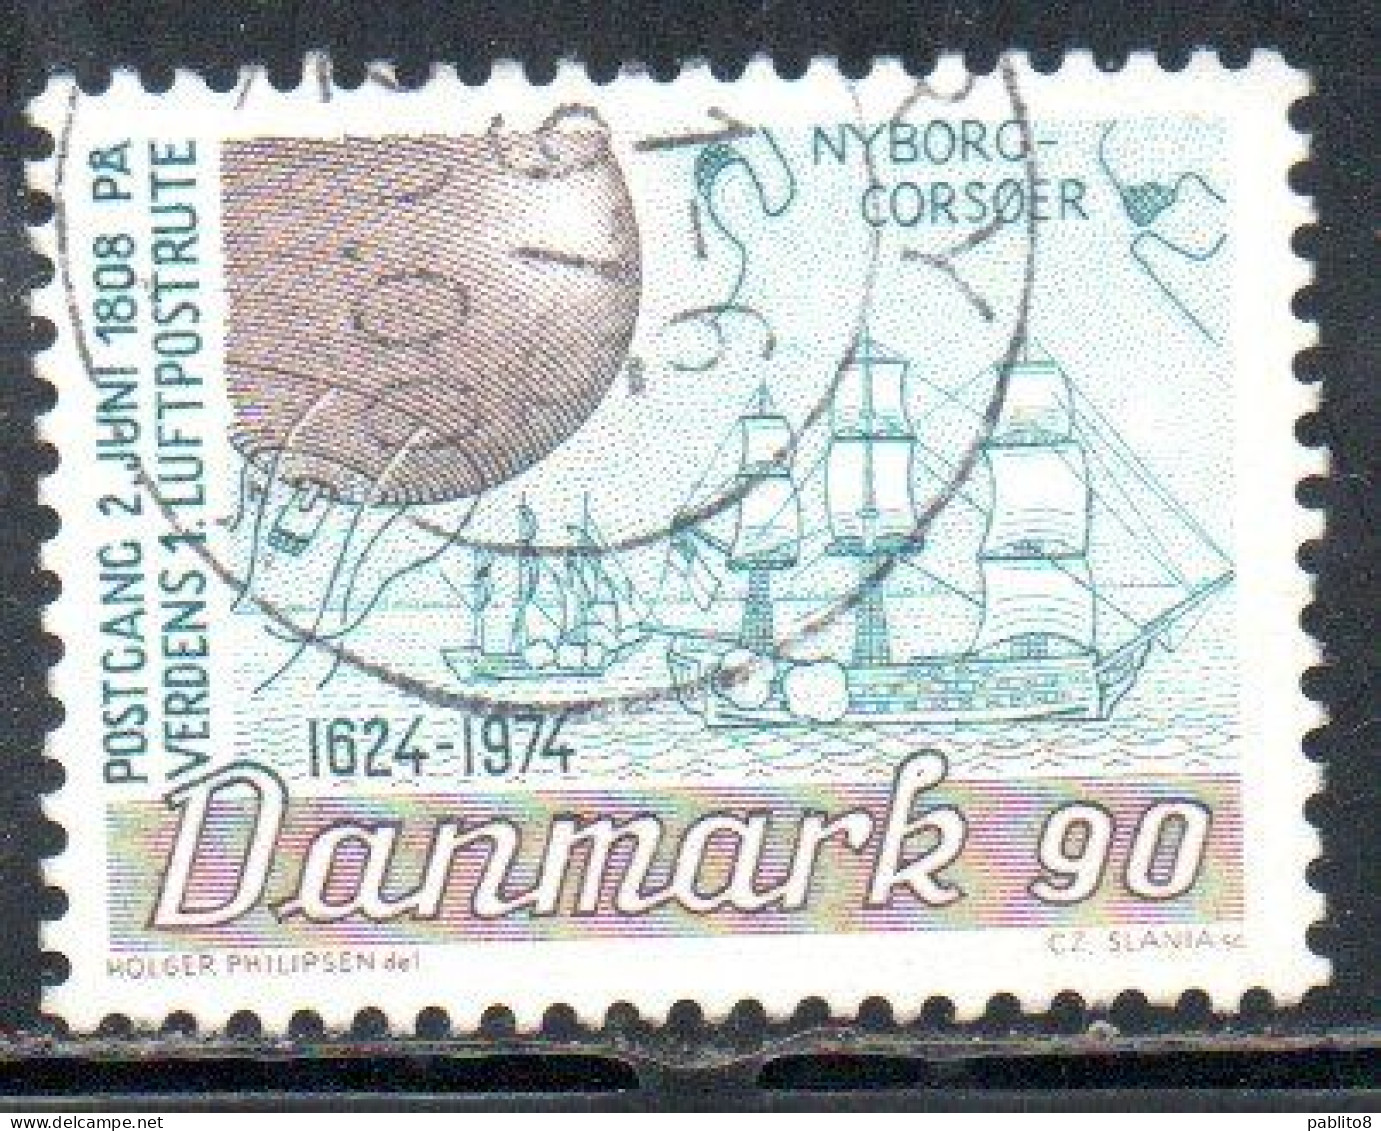 DANEMARK DANMARK DENMARK DANIMARCA 1974 DANISH PO POSTAL OFFICEBALLON AND SAILINF SHIPS 90o USED USATO OBLITERE' - Used Stamps